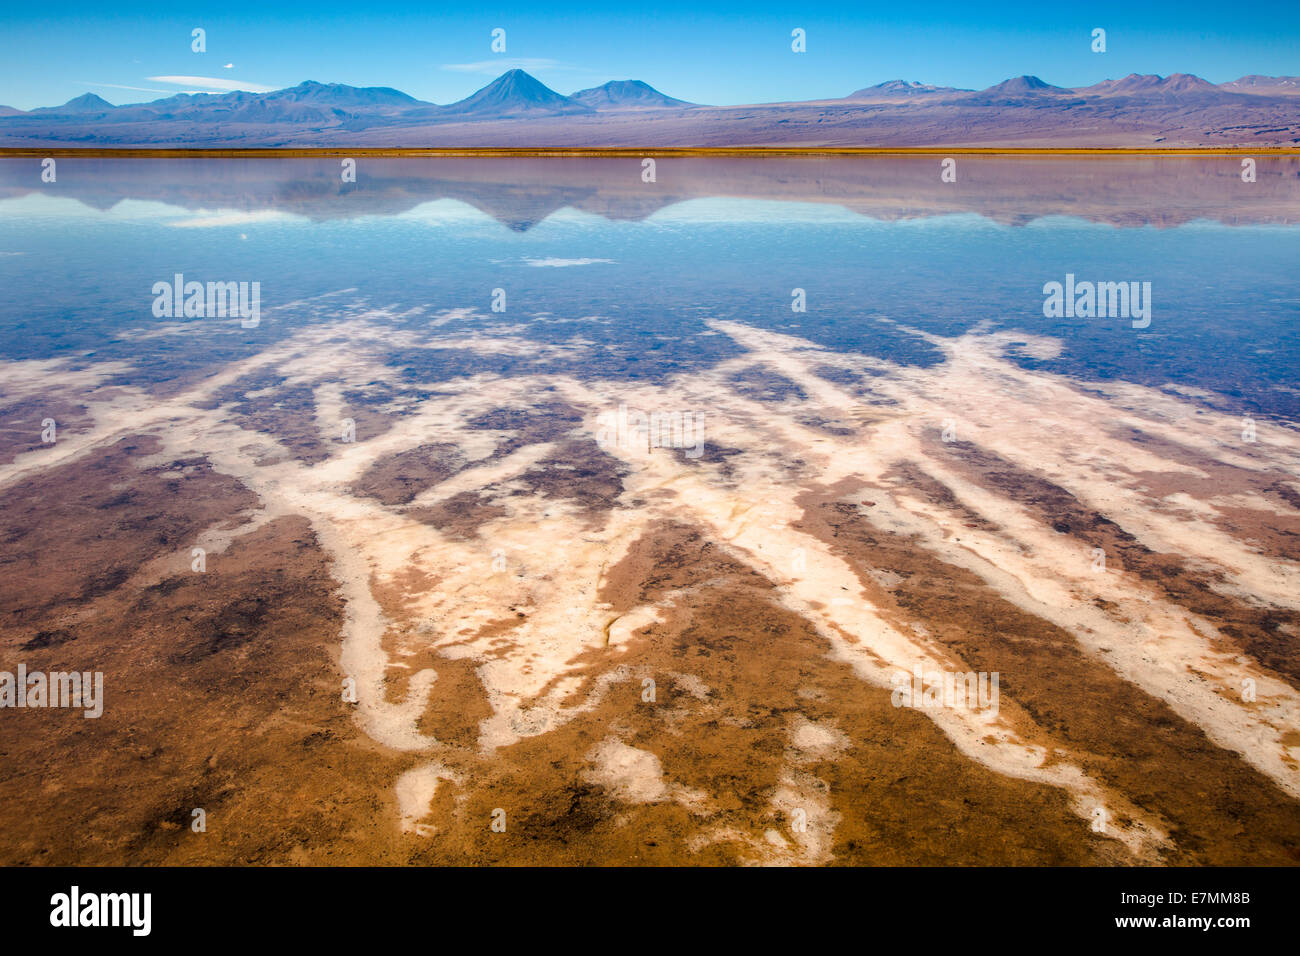 Chile, El Norte Grande, Region de Antofagasta, Salar de Atacama, Laguna Tebinquinche in daytime Stock Photo